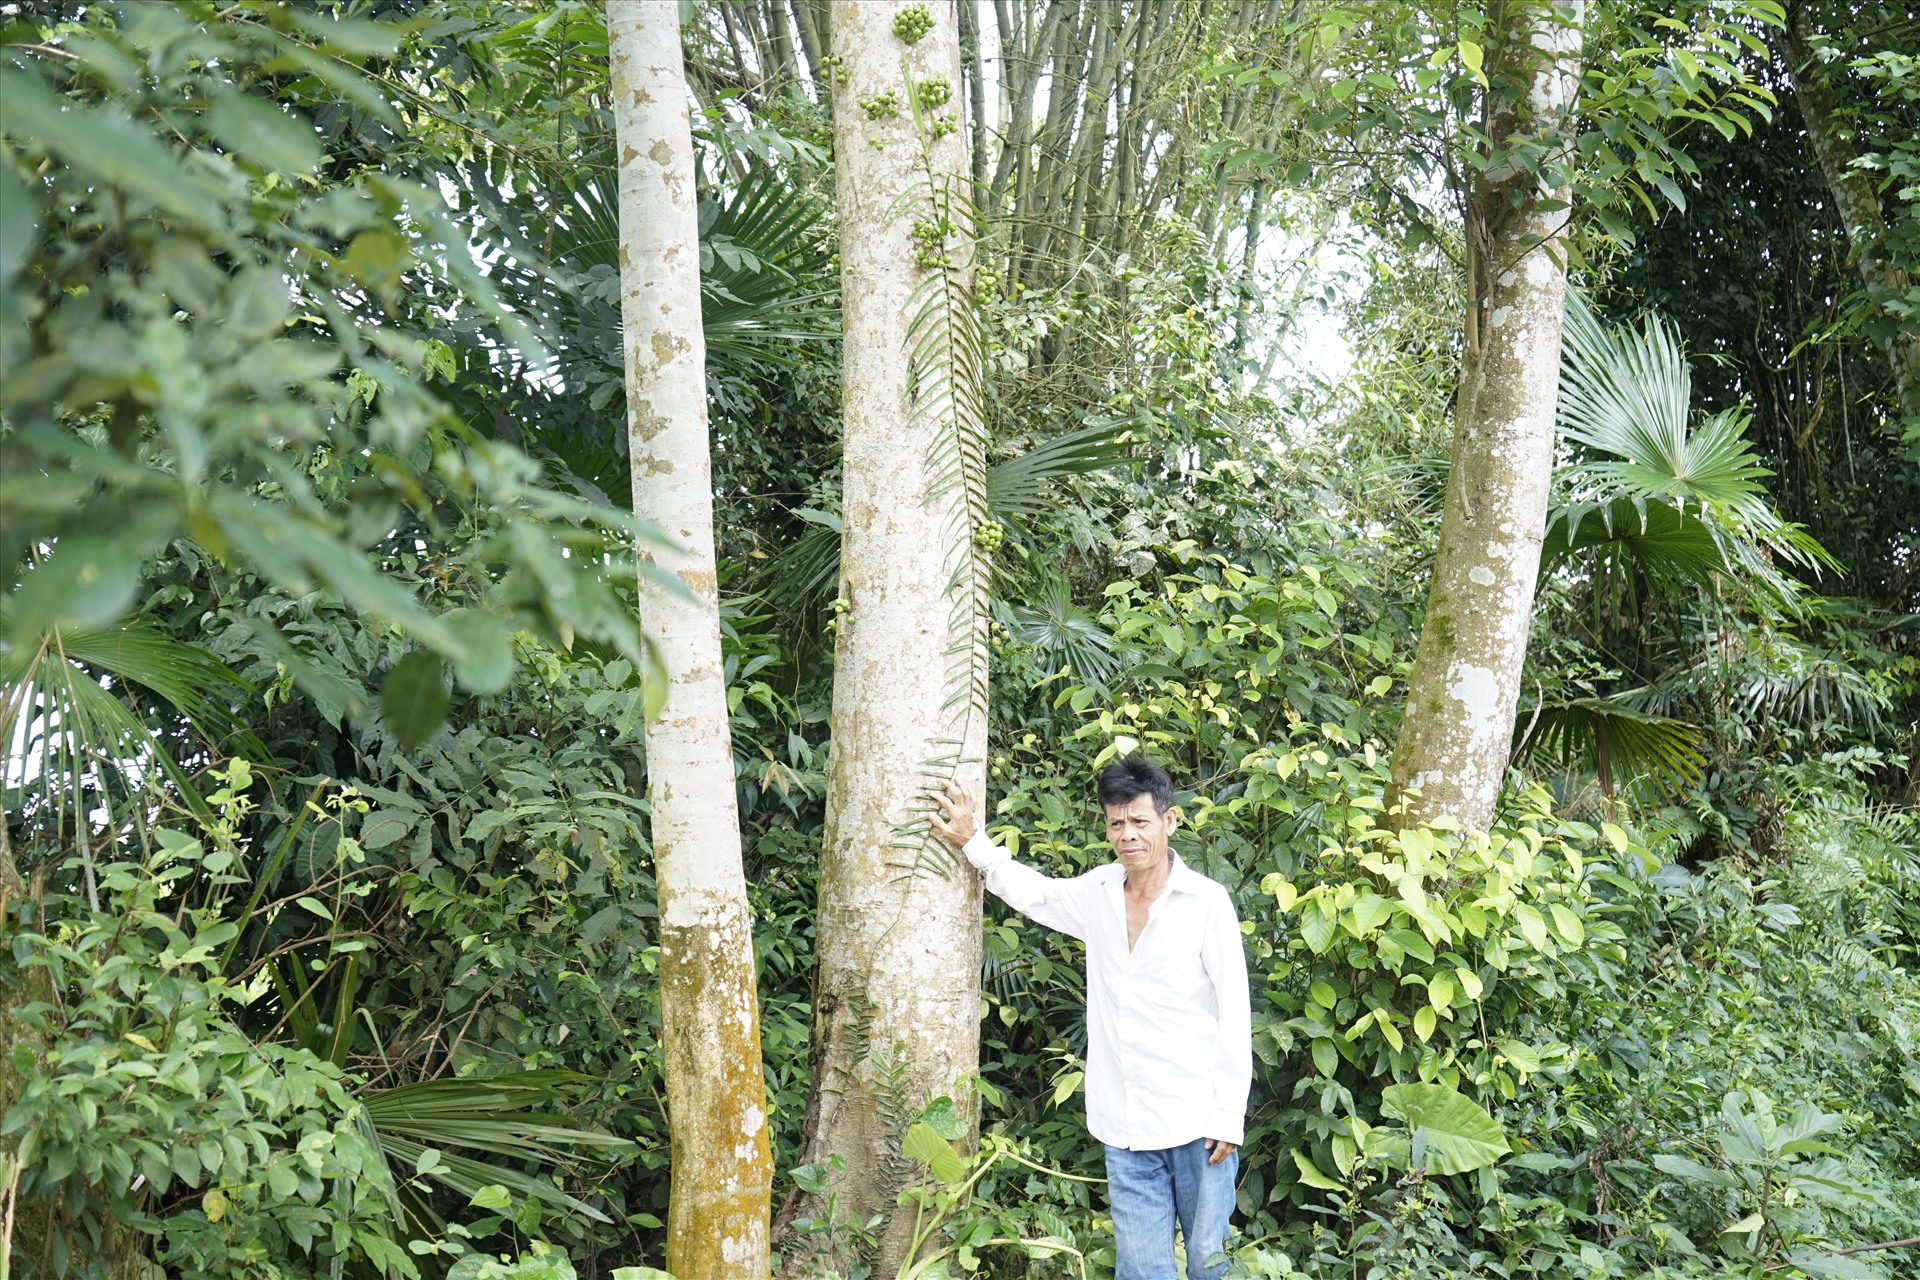 Ông Hán Duy Thạch (thôn Thượng Hải- xã Gia Phố) bên hàng cây cổ thụ sẽ bị chặt bỏ để xây kè chống sạt lở. Ảnh Trần Tuấn